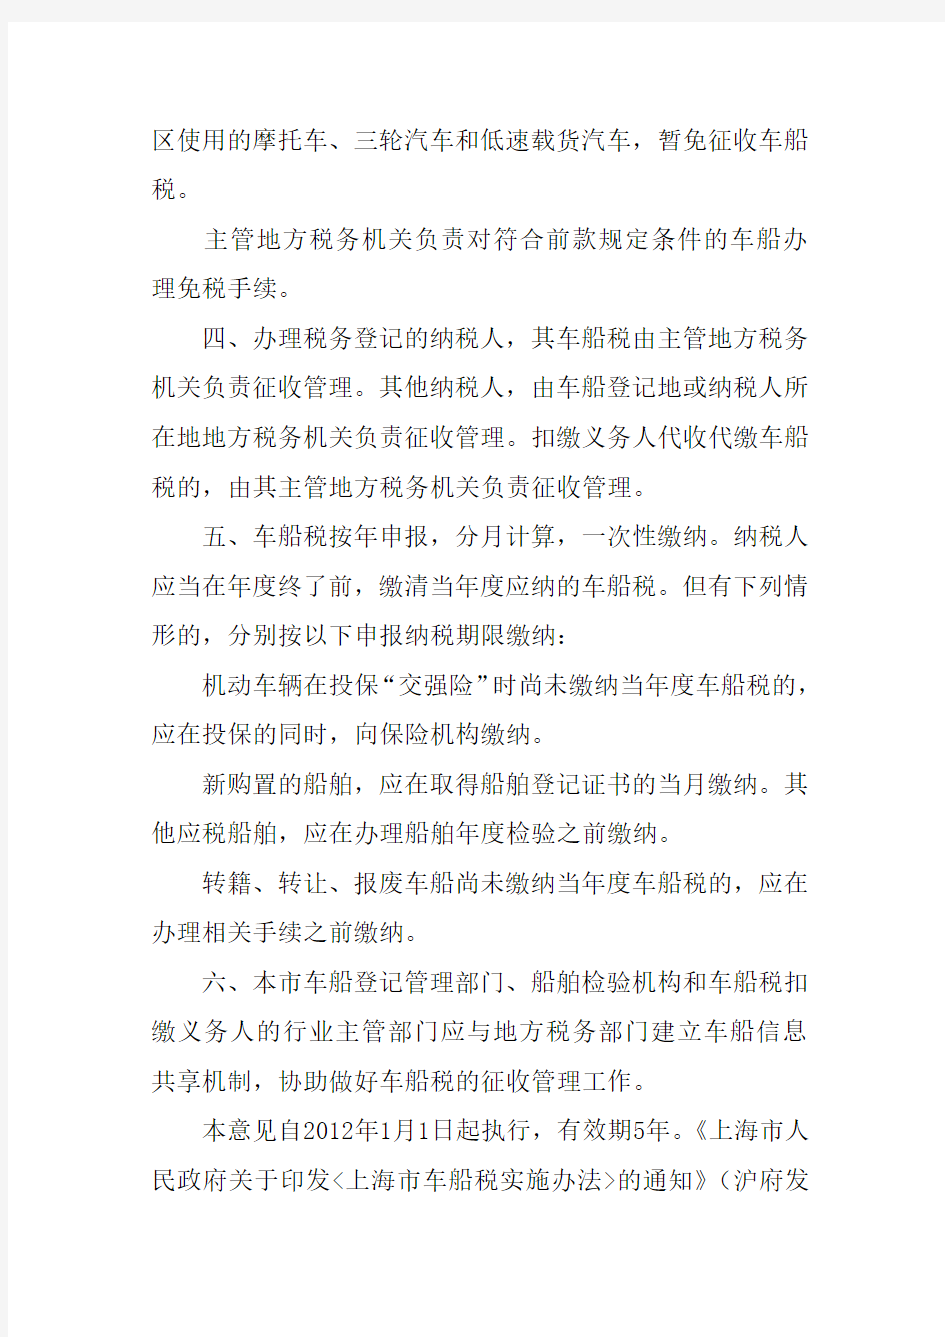 上海市贯彻《中华人民共和国车船税法》若干意见的通知